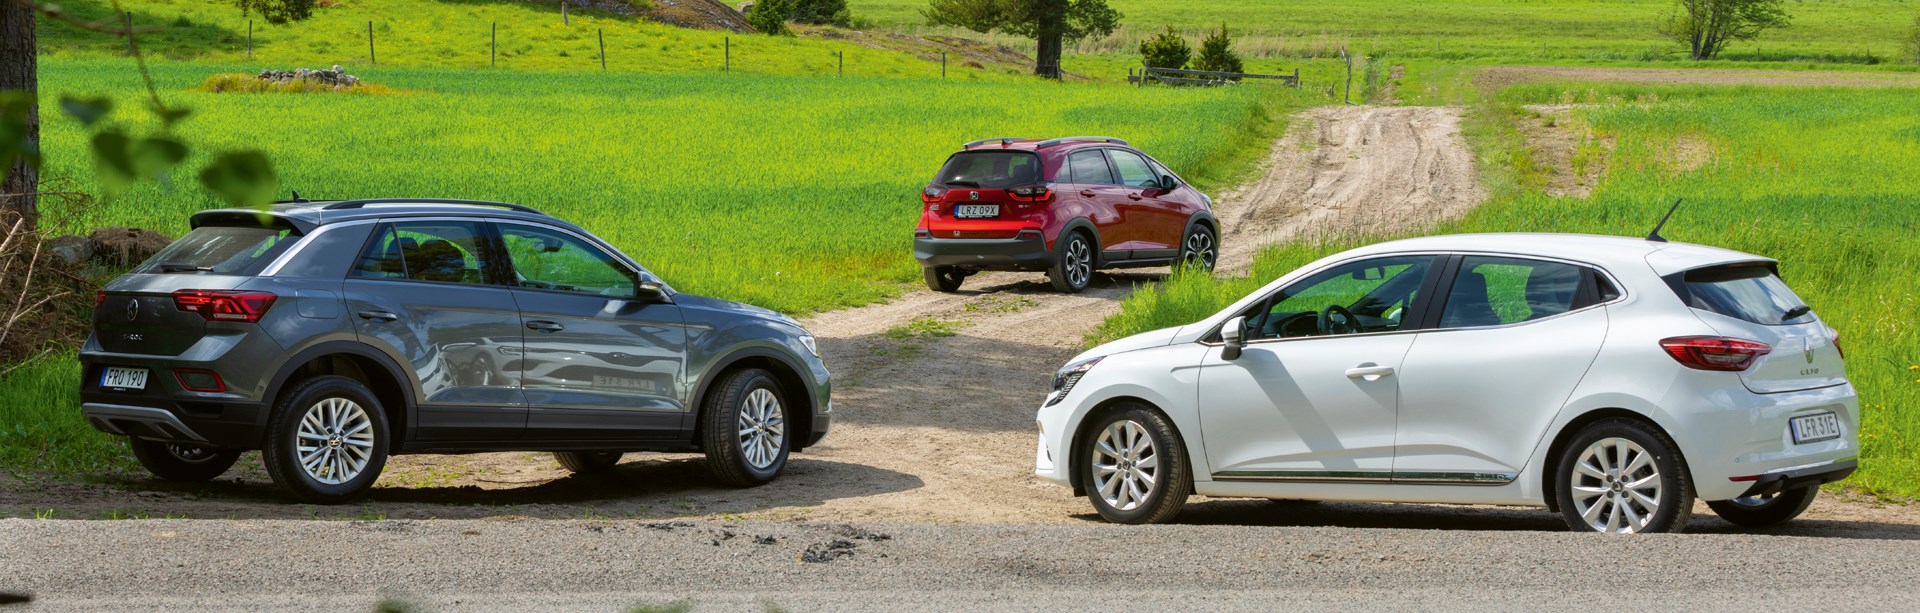 M Sverige testar Honda Jazz, Renault Clio och Volkswagen T-Roc